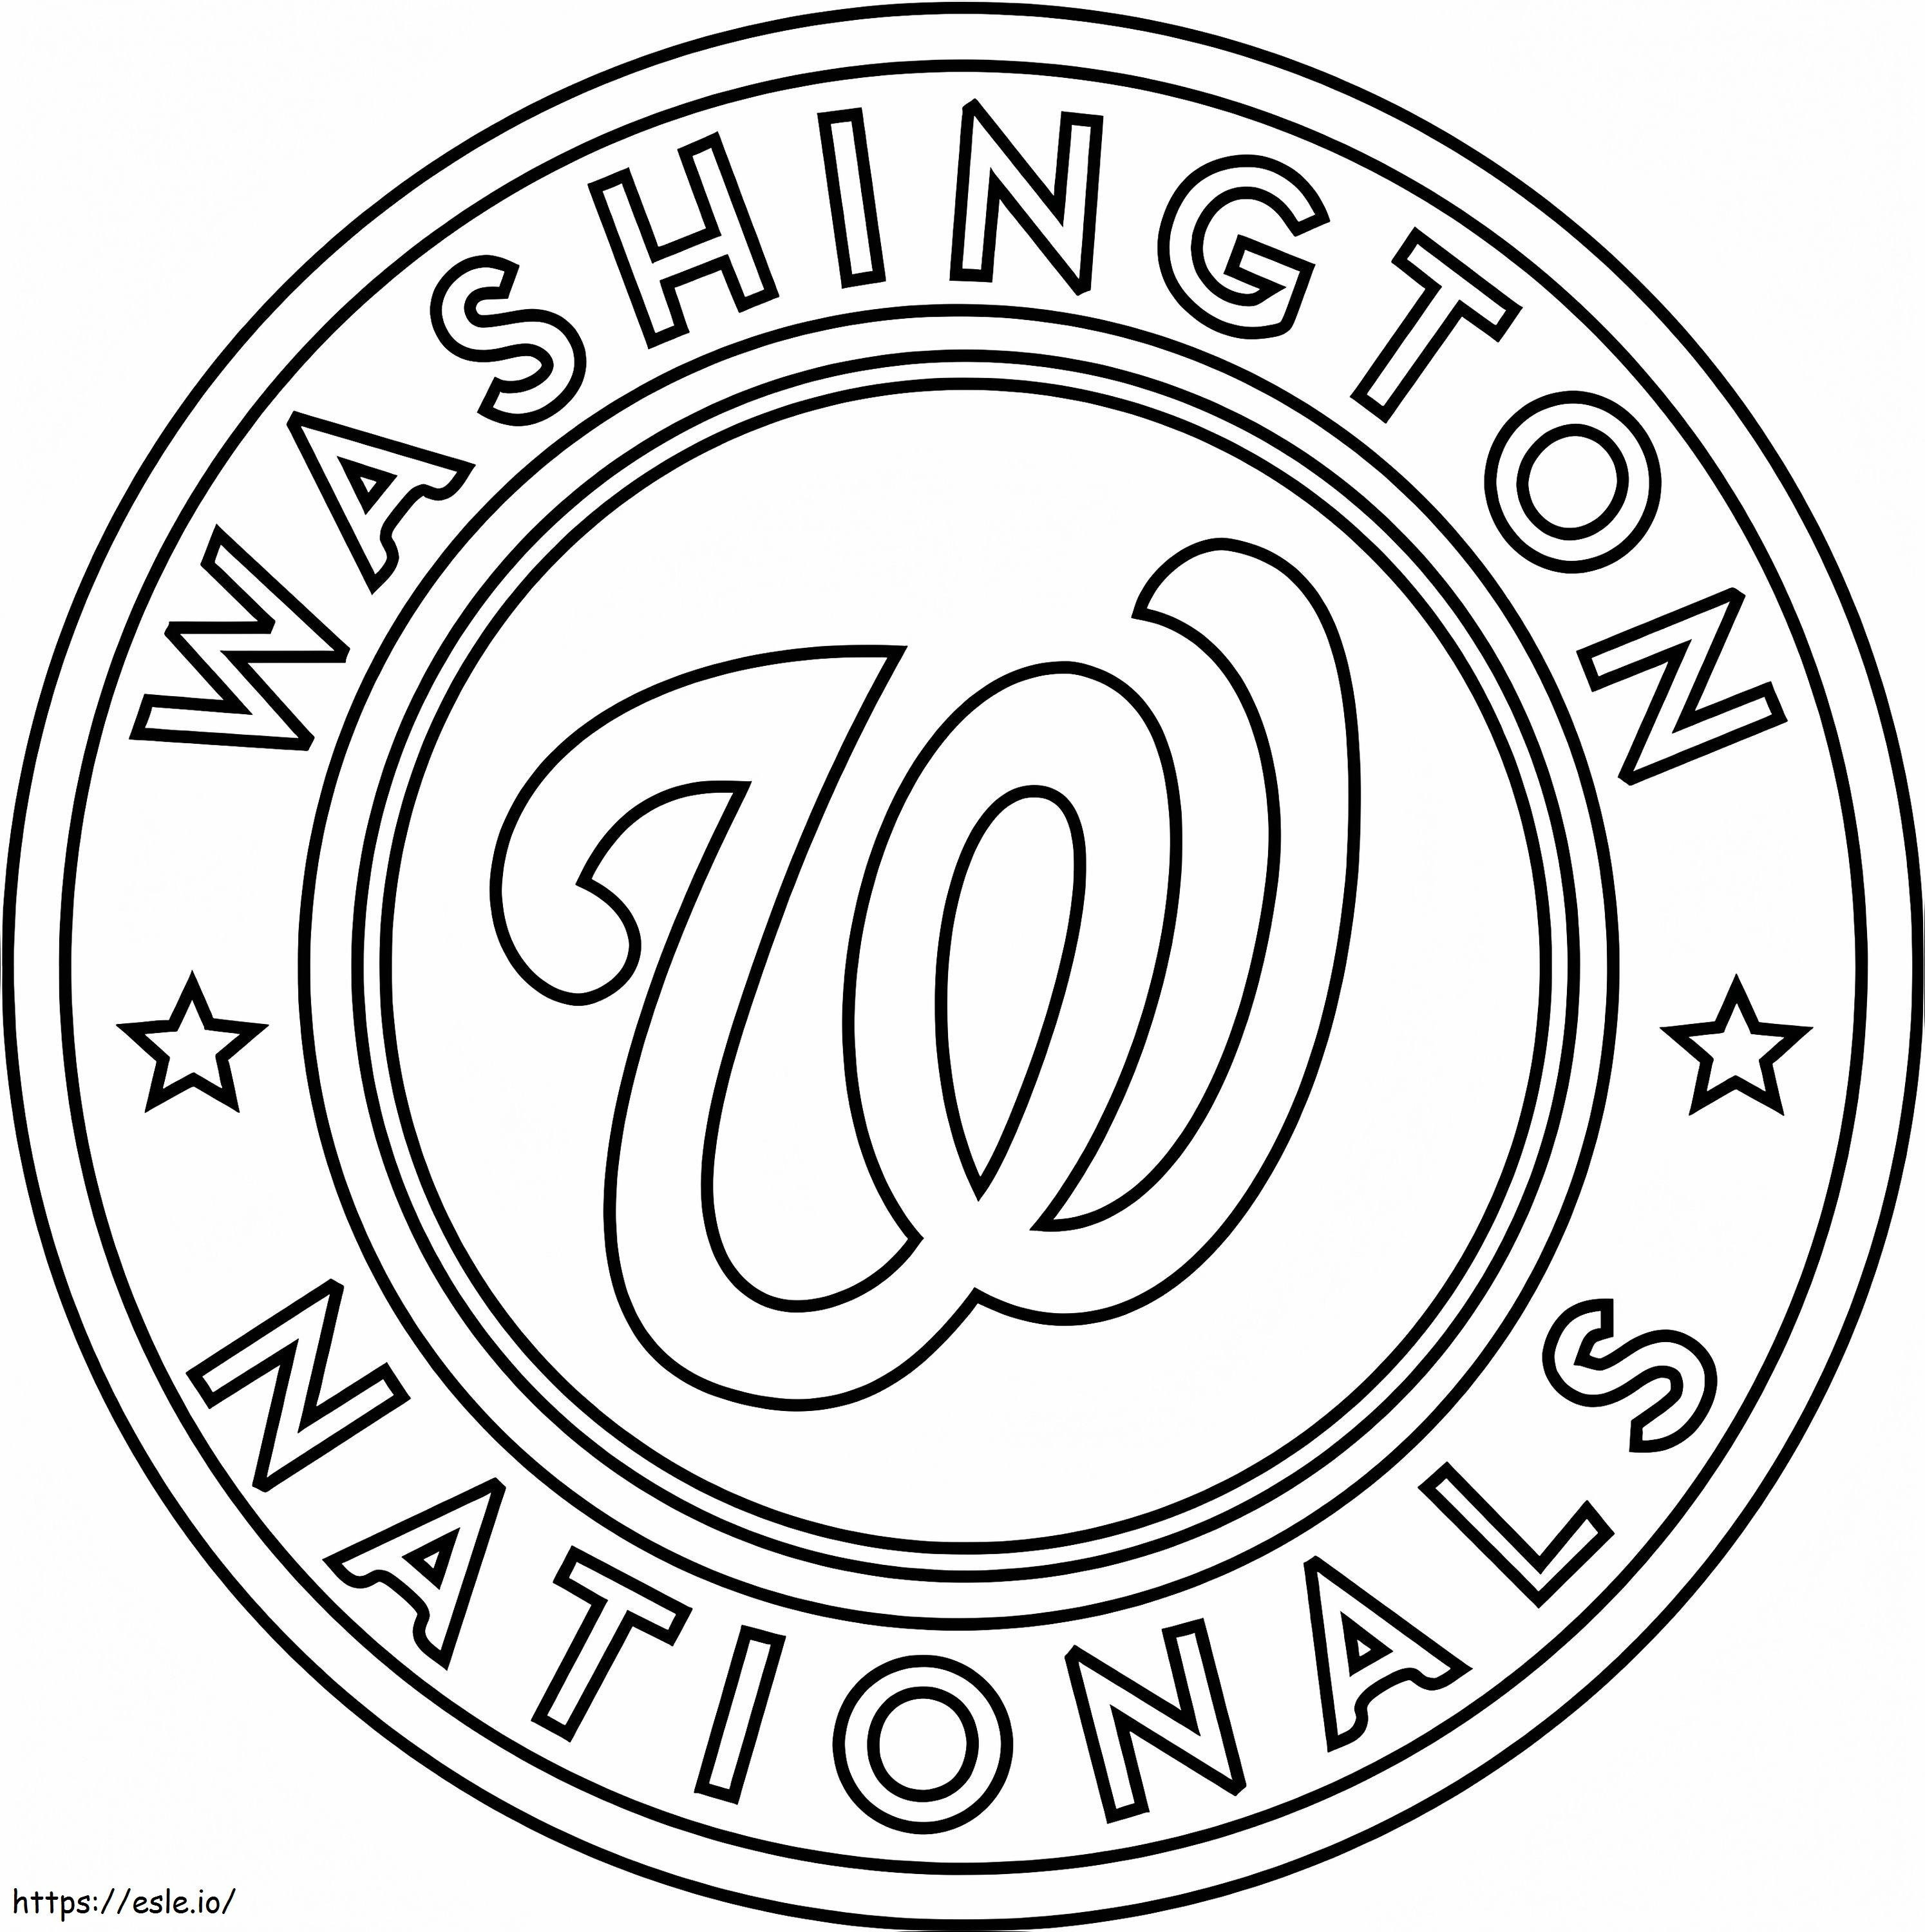 Logo narodowe Waszyngtonu kolorowanka